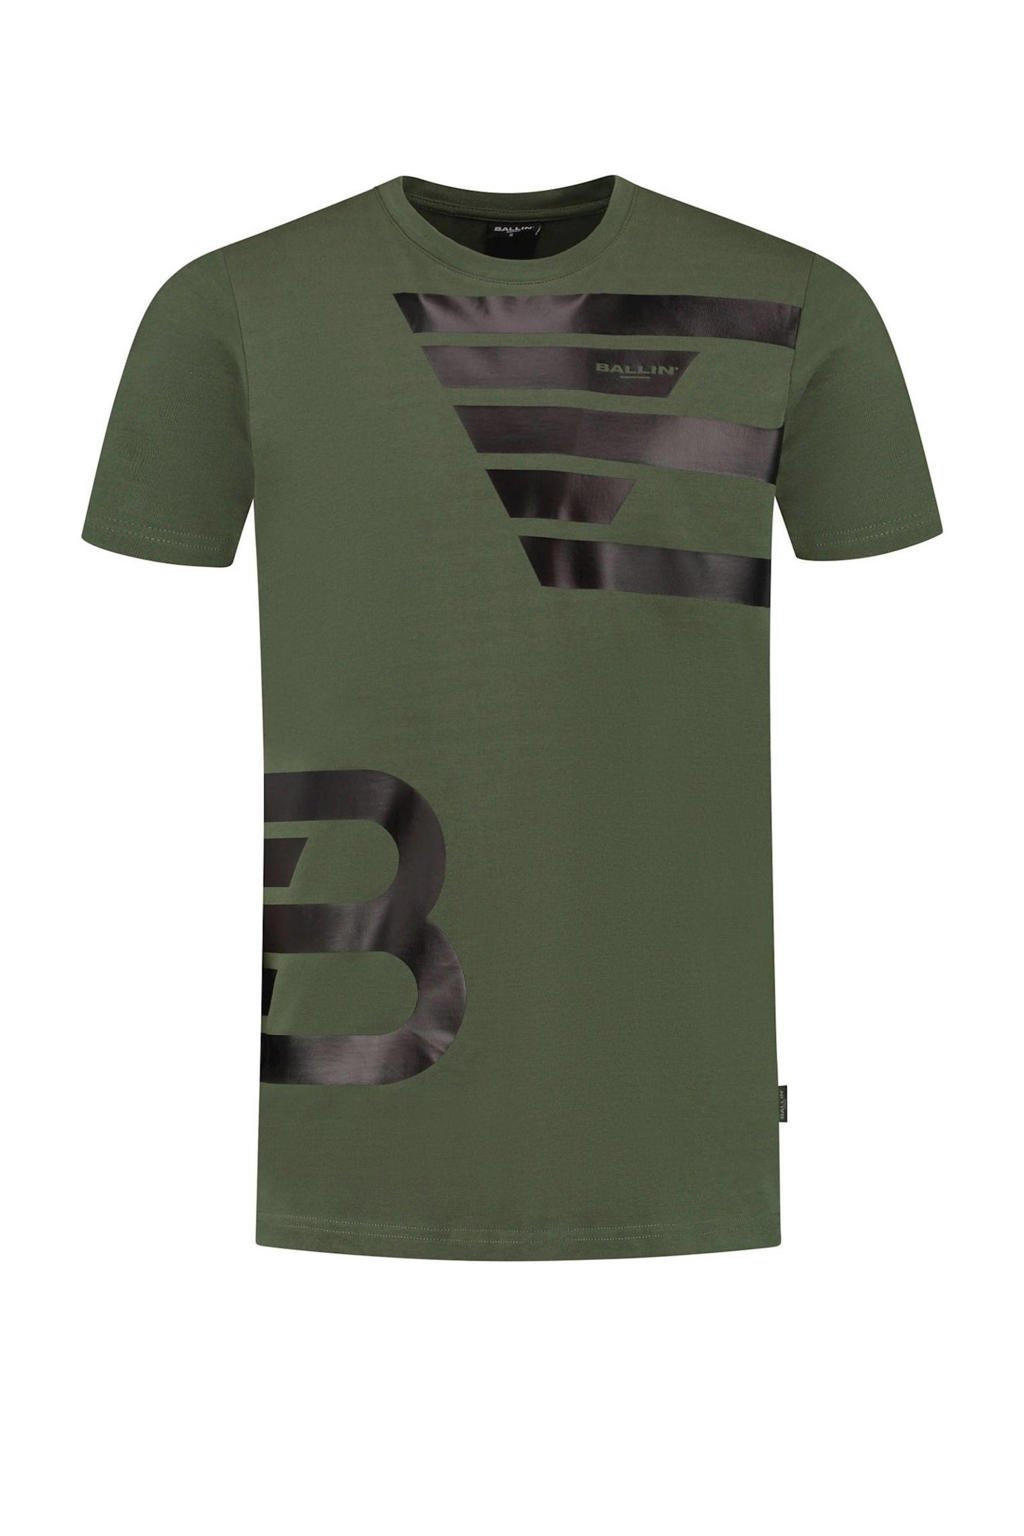 Groene heren Ballin regular fit T-shirt van katoen met printopdruk, korte mouwen en ronde hals